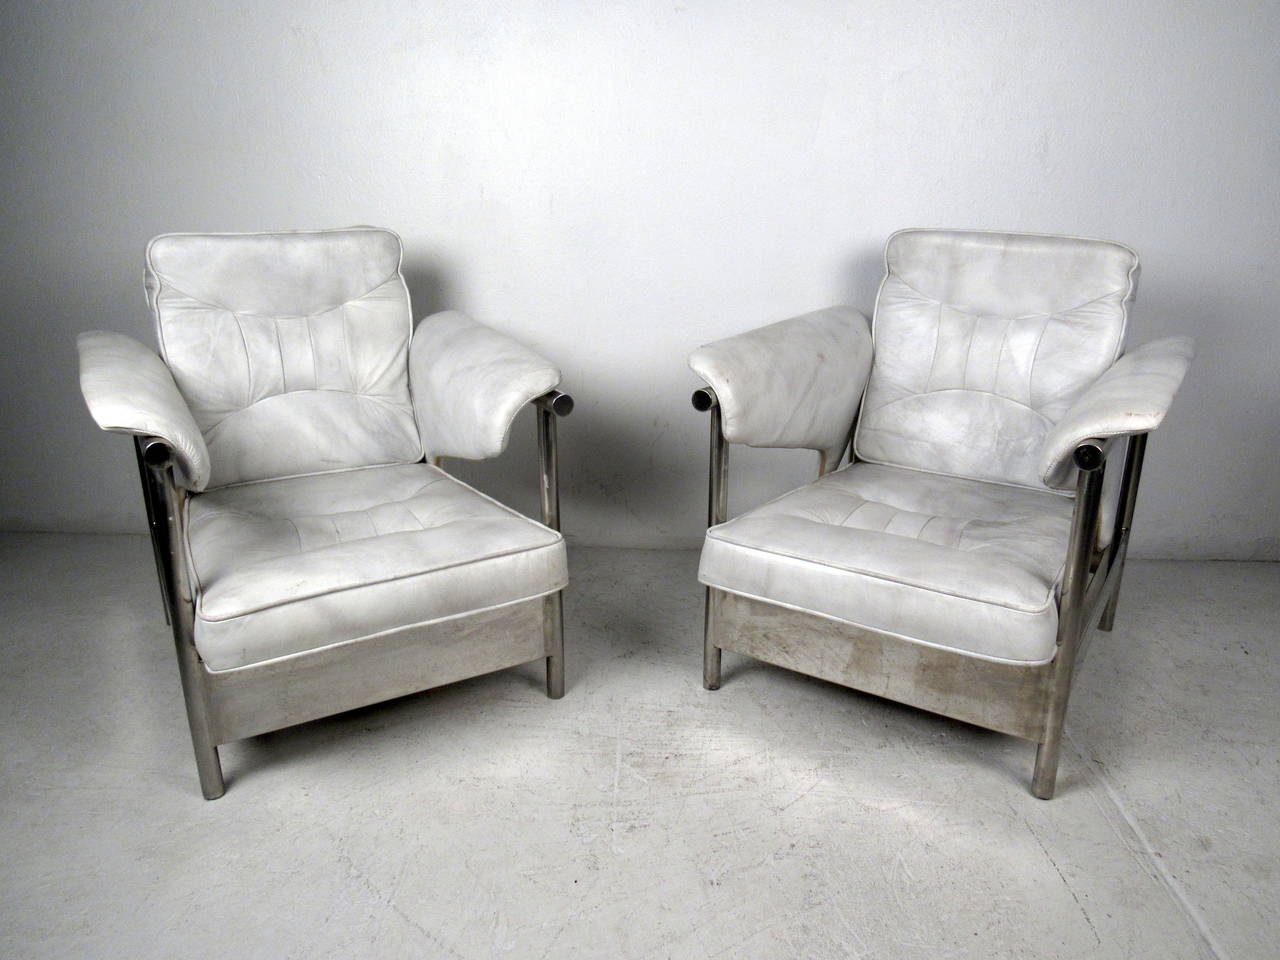 Cette paire de fauteuils de salon italiens est dotée d'un lourd cadre chromé et d'un revêtement en cuir blanc vintage qui confère une touche moderne et audacieuse à tout espace domestique ou de bureau.

Veuillez confirmer la localisation de